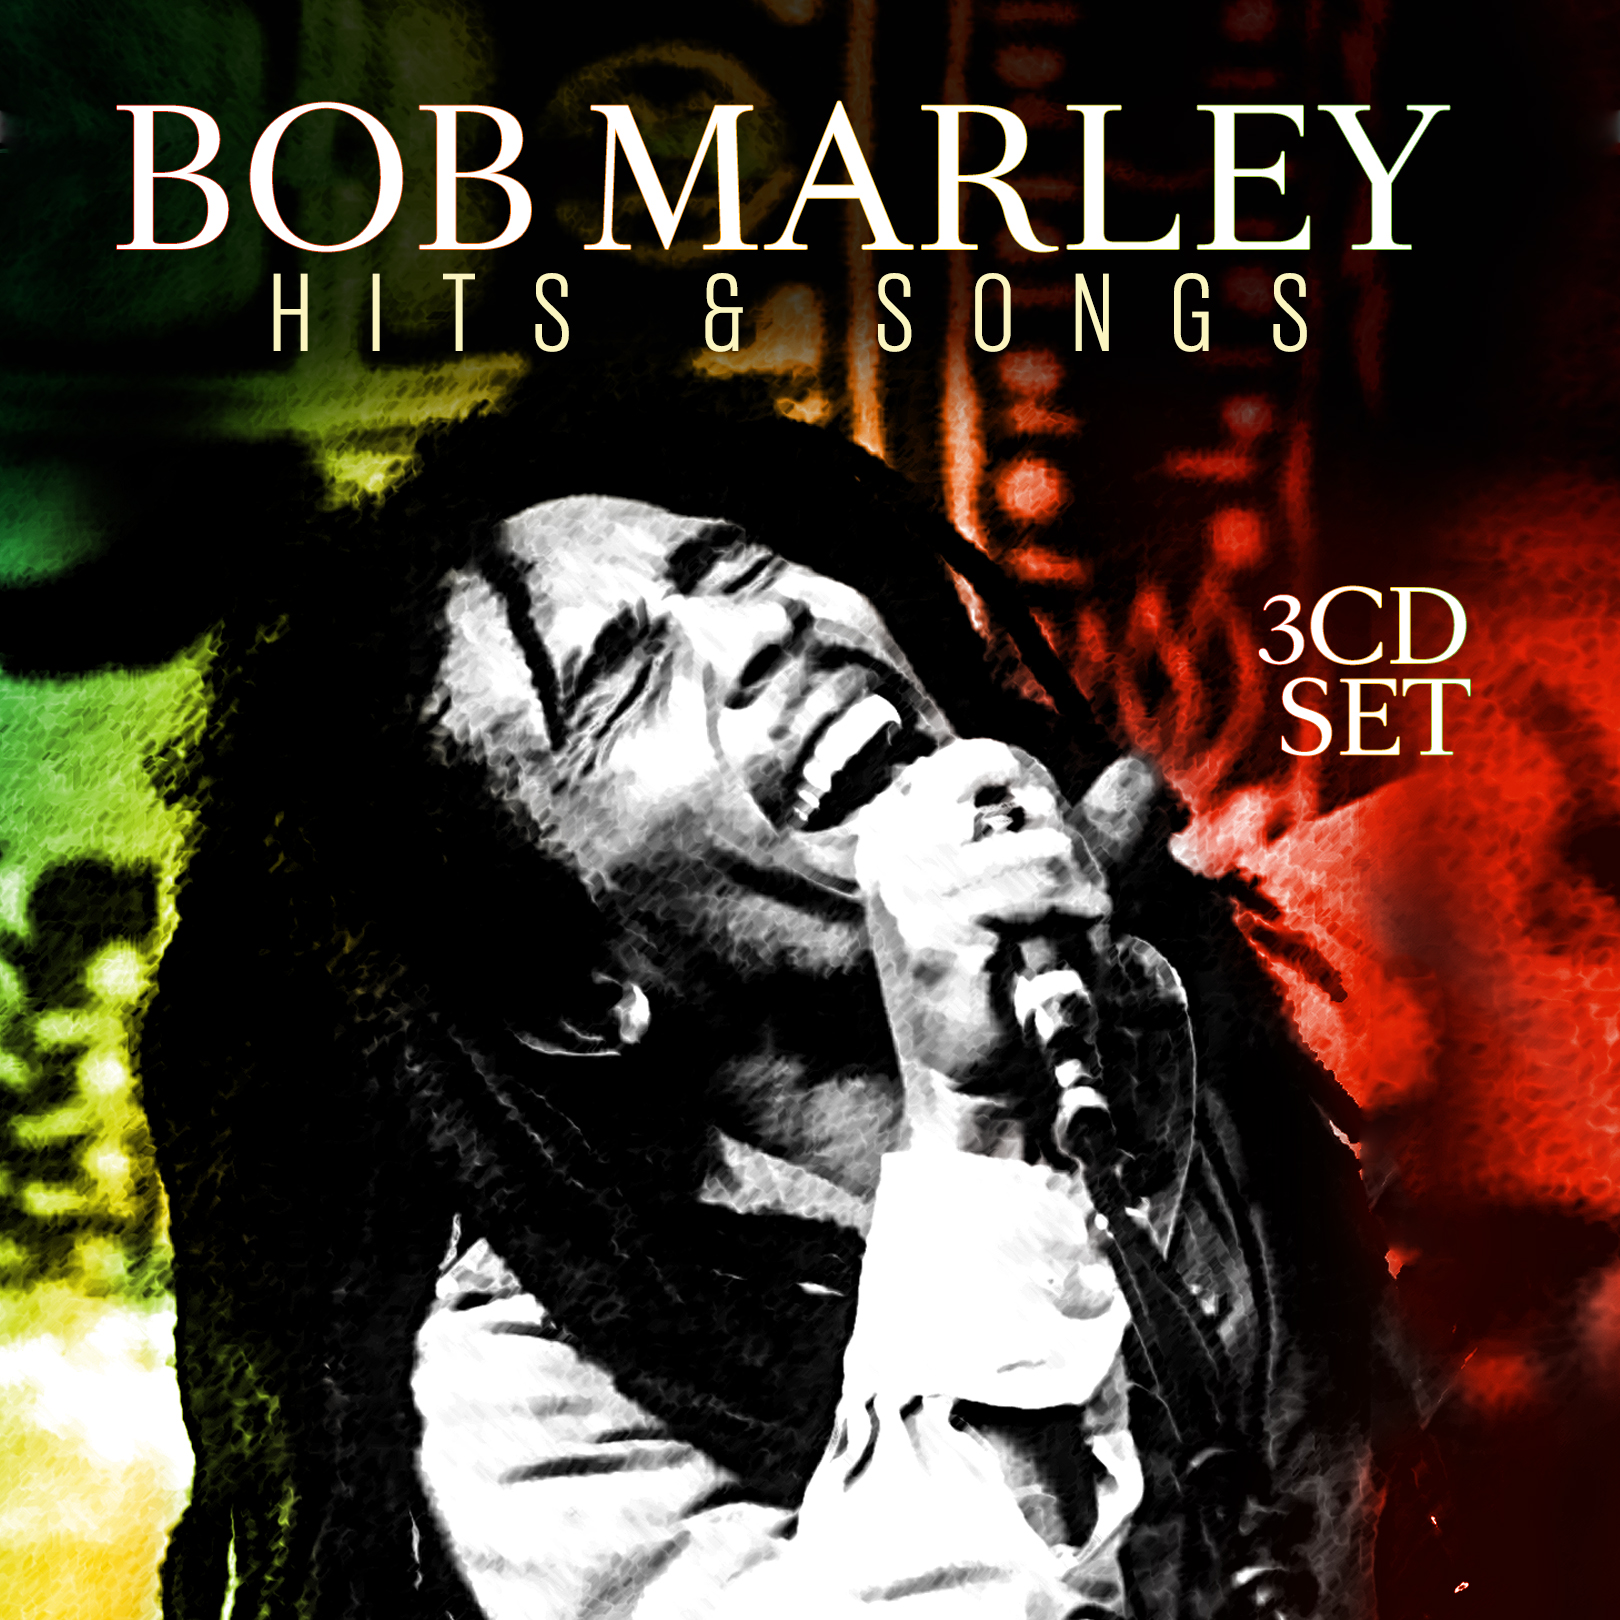 CD Bob Marley Hits and Songs 3CDs 90204687879 | eBay